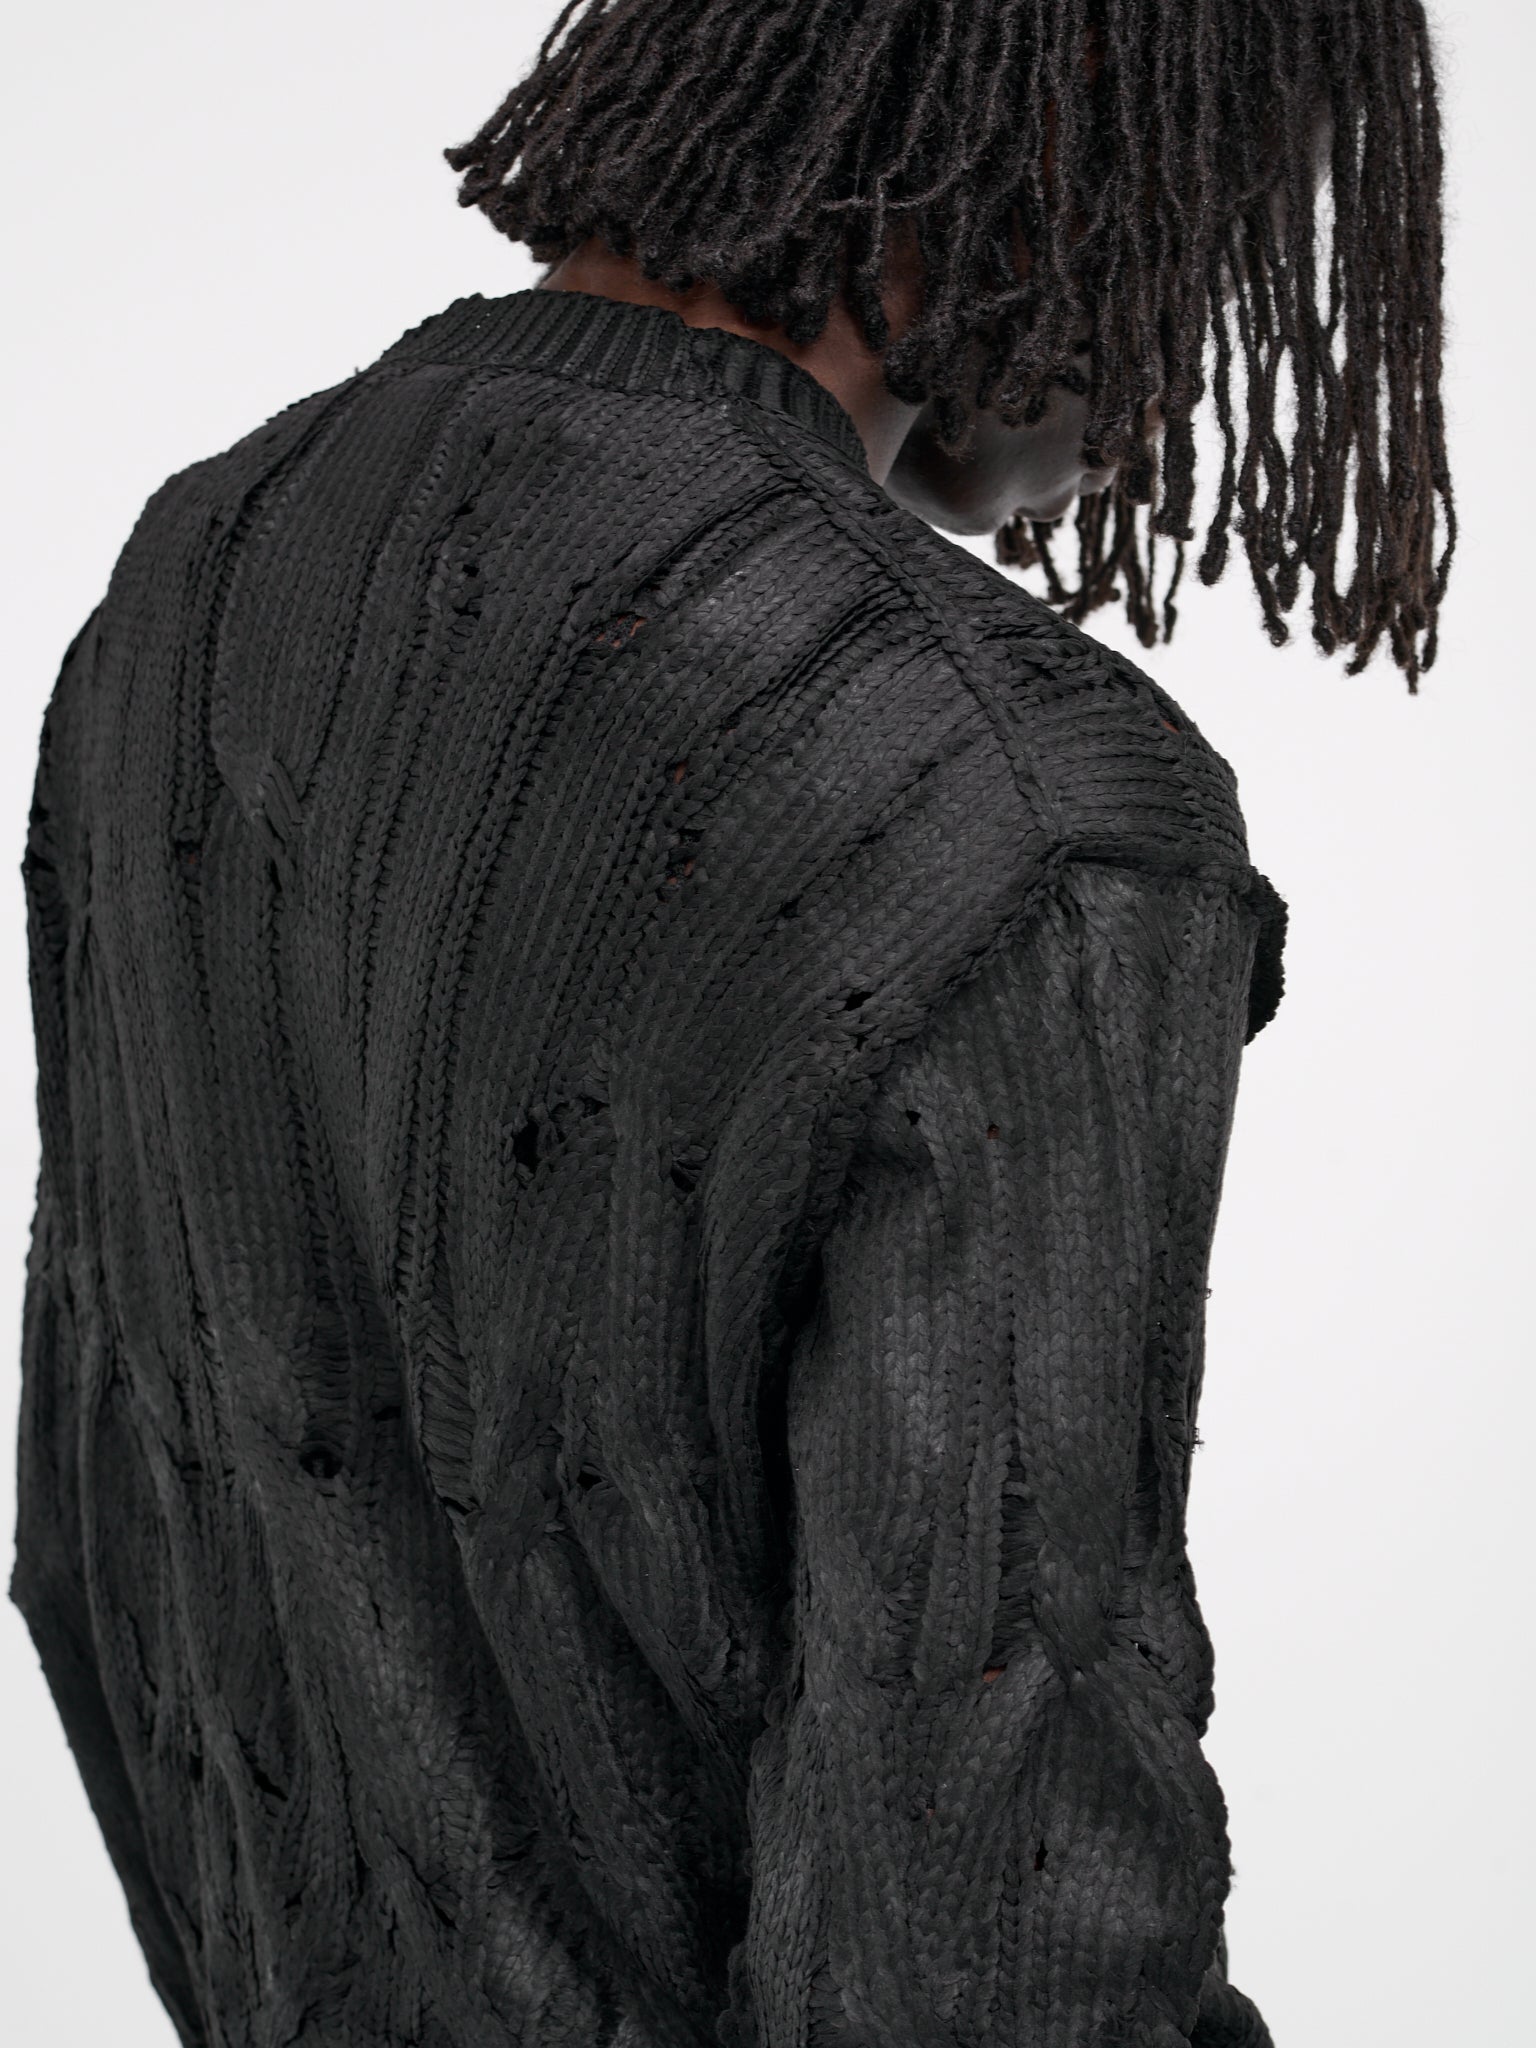 Distressed Knit Sweater (JM-N017-051-BLACK)